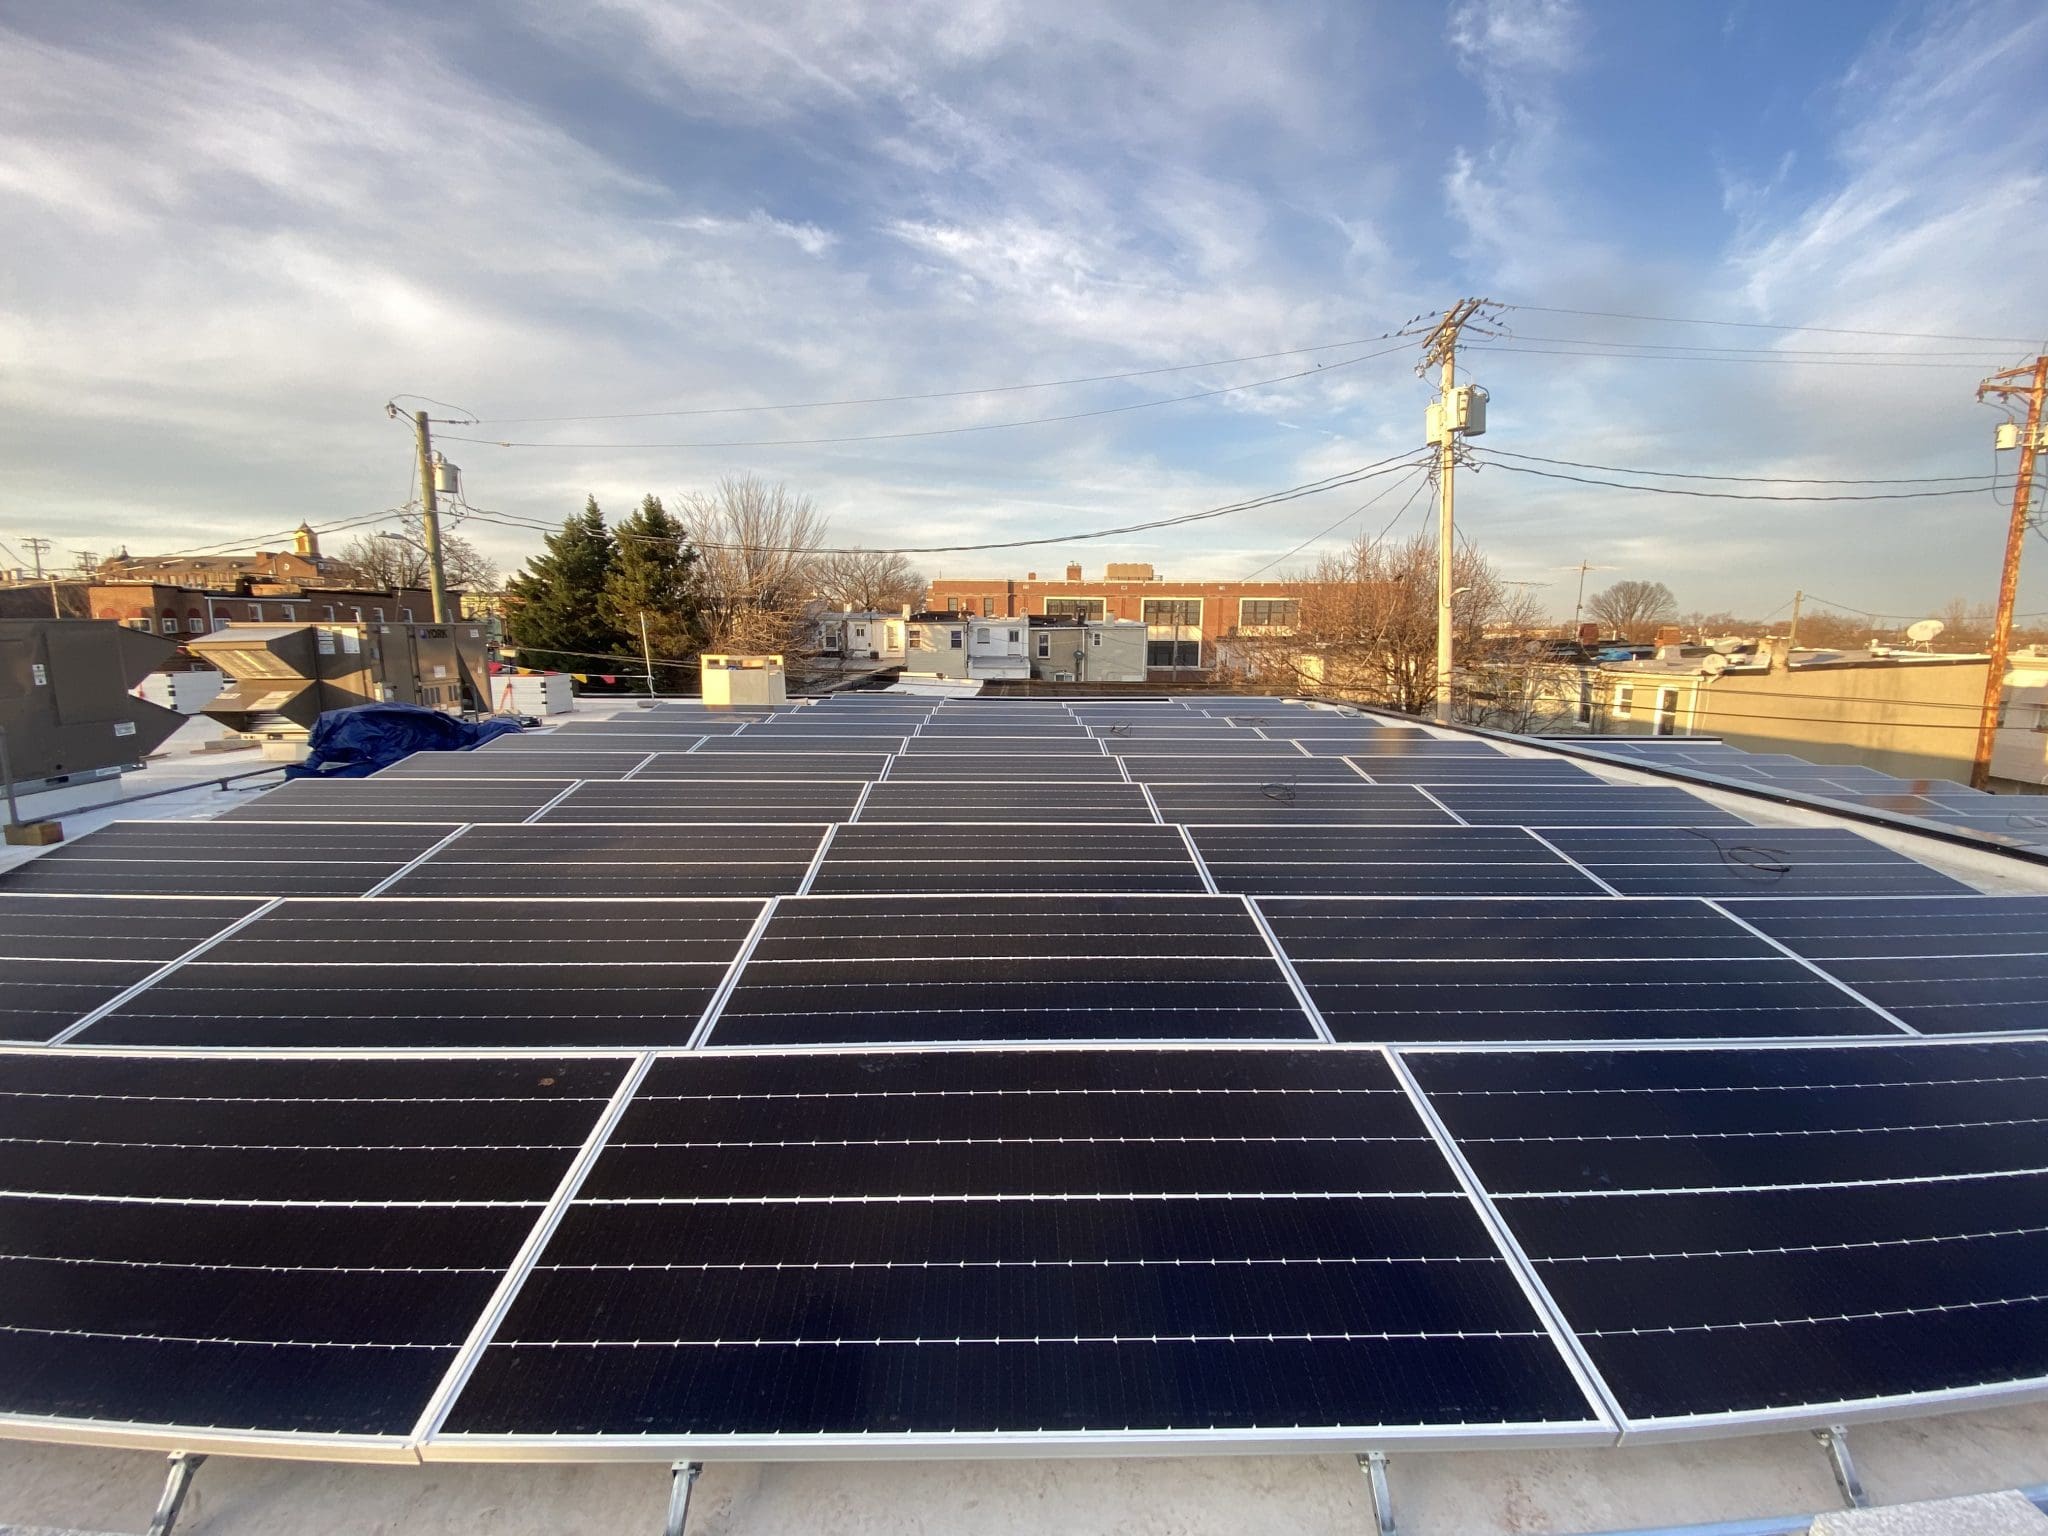 Baltimore rooftop solar array